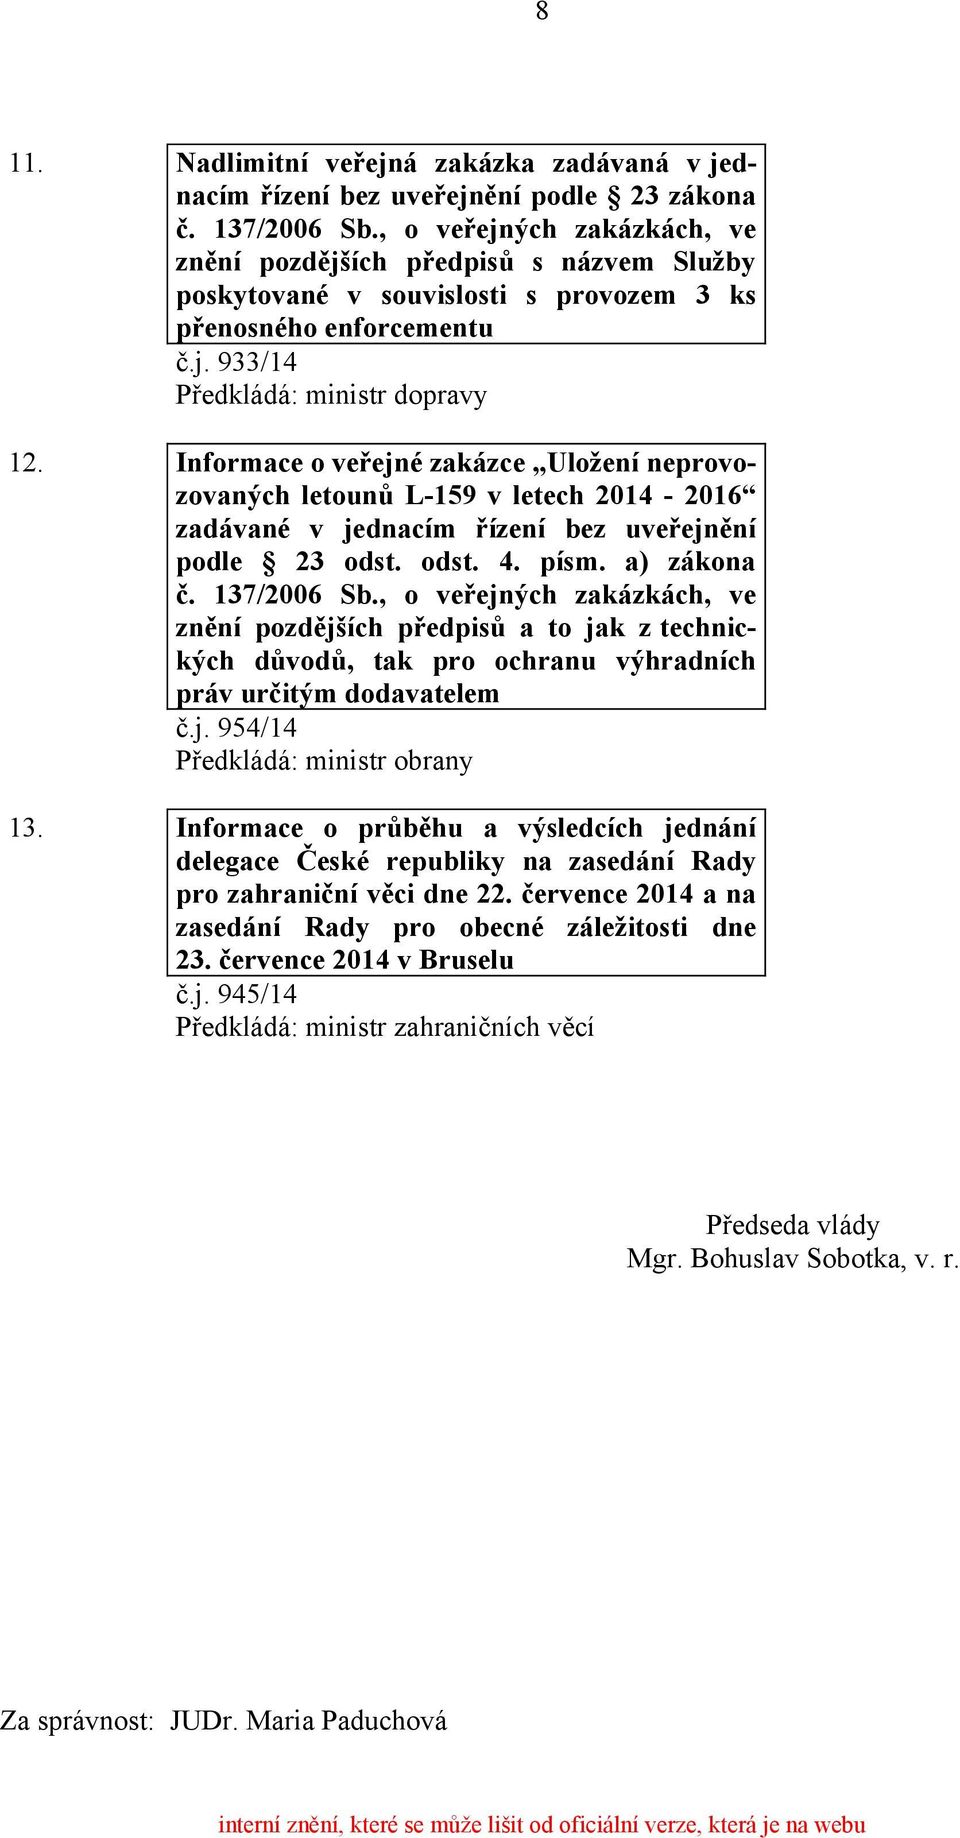 Informace o veřejné zakázce Uložení neprovozovaných letounů L-159 v letech 2014-2016 zadávané v jednacím řízení bez uveřejnění podle 23 odst. odst. 4. písm. a) zákona č. 137/2006 Sb.